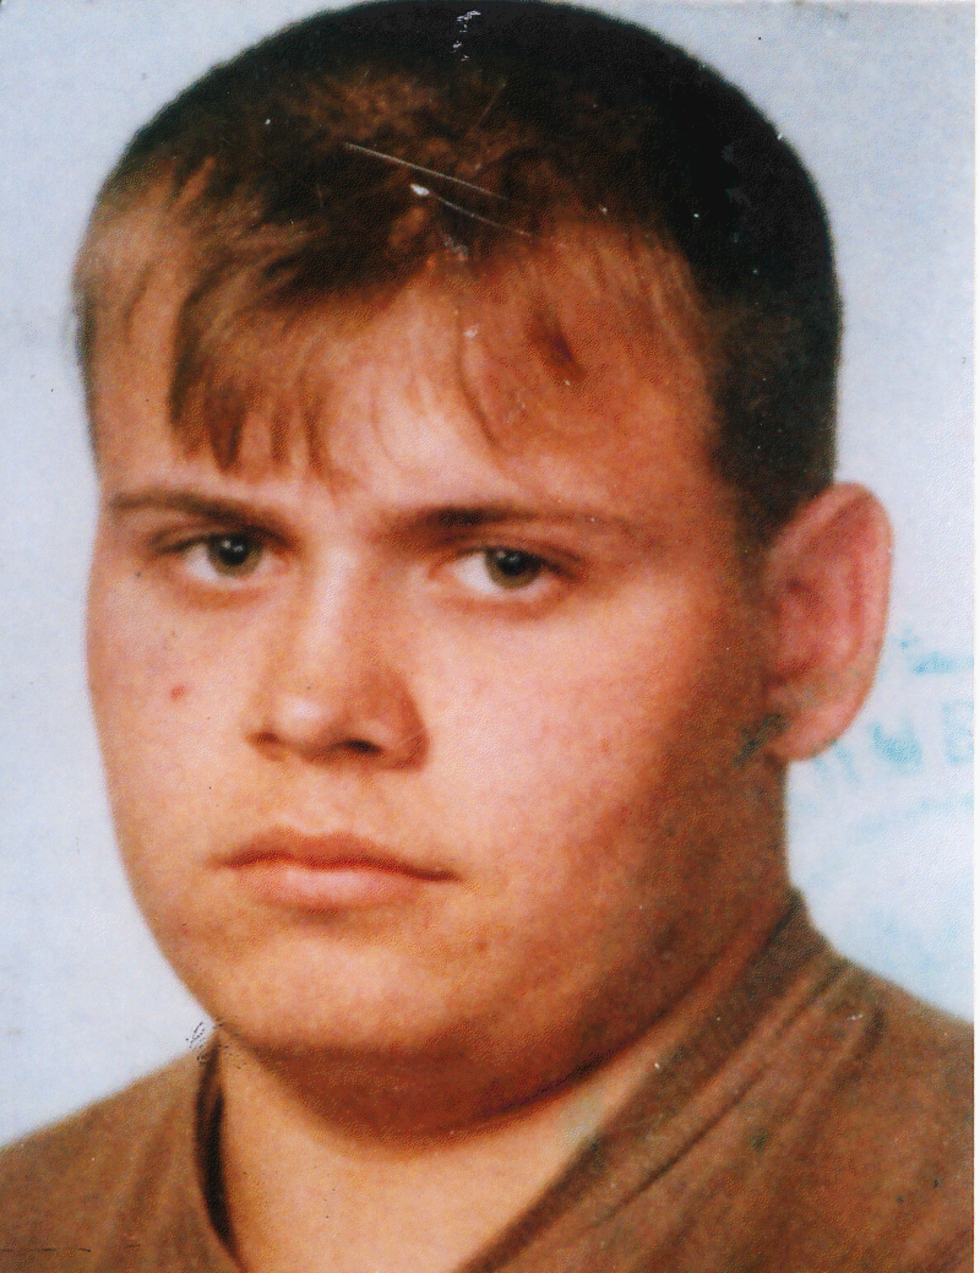  6 kwietnia 2002 r. w Dorohusku (Lubelskie) zaginął Artur Masełko. W momencie zaginięcia miał 22 lata, wyszedł z domu i od tamtej pory nie nawiązał kontaktu z rodziną. Ma 174 cm wzrostu i niebieskie oczy.